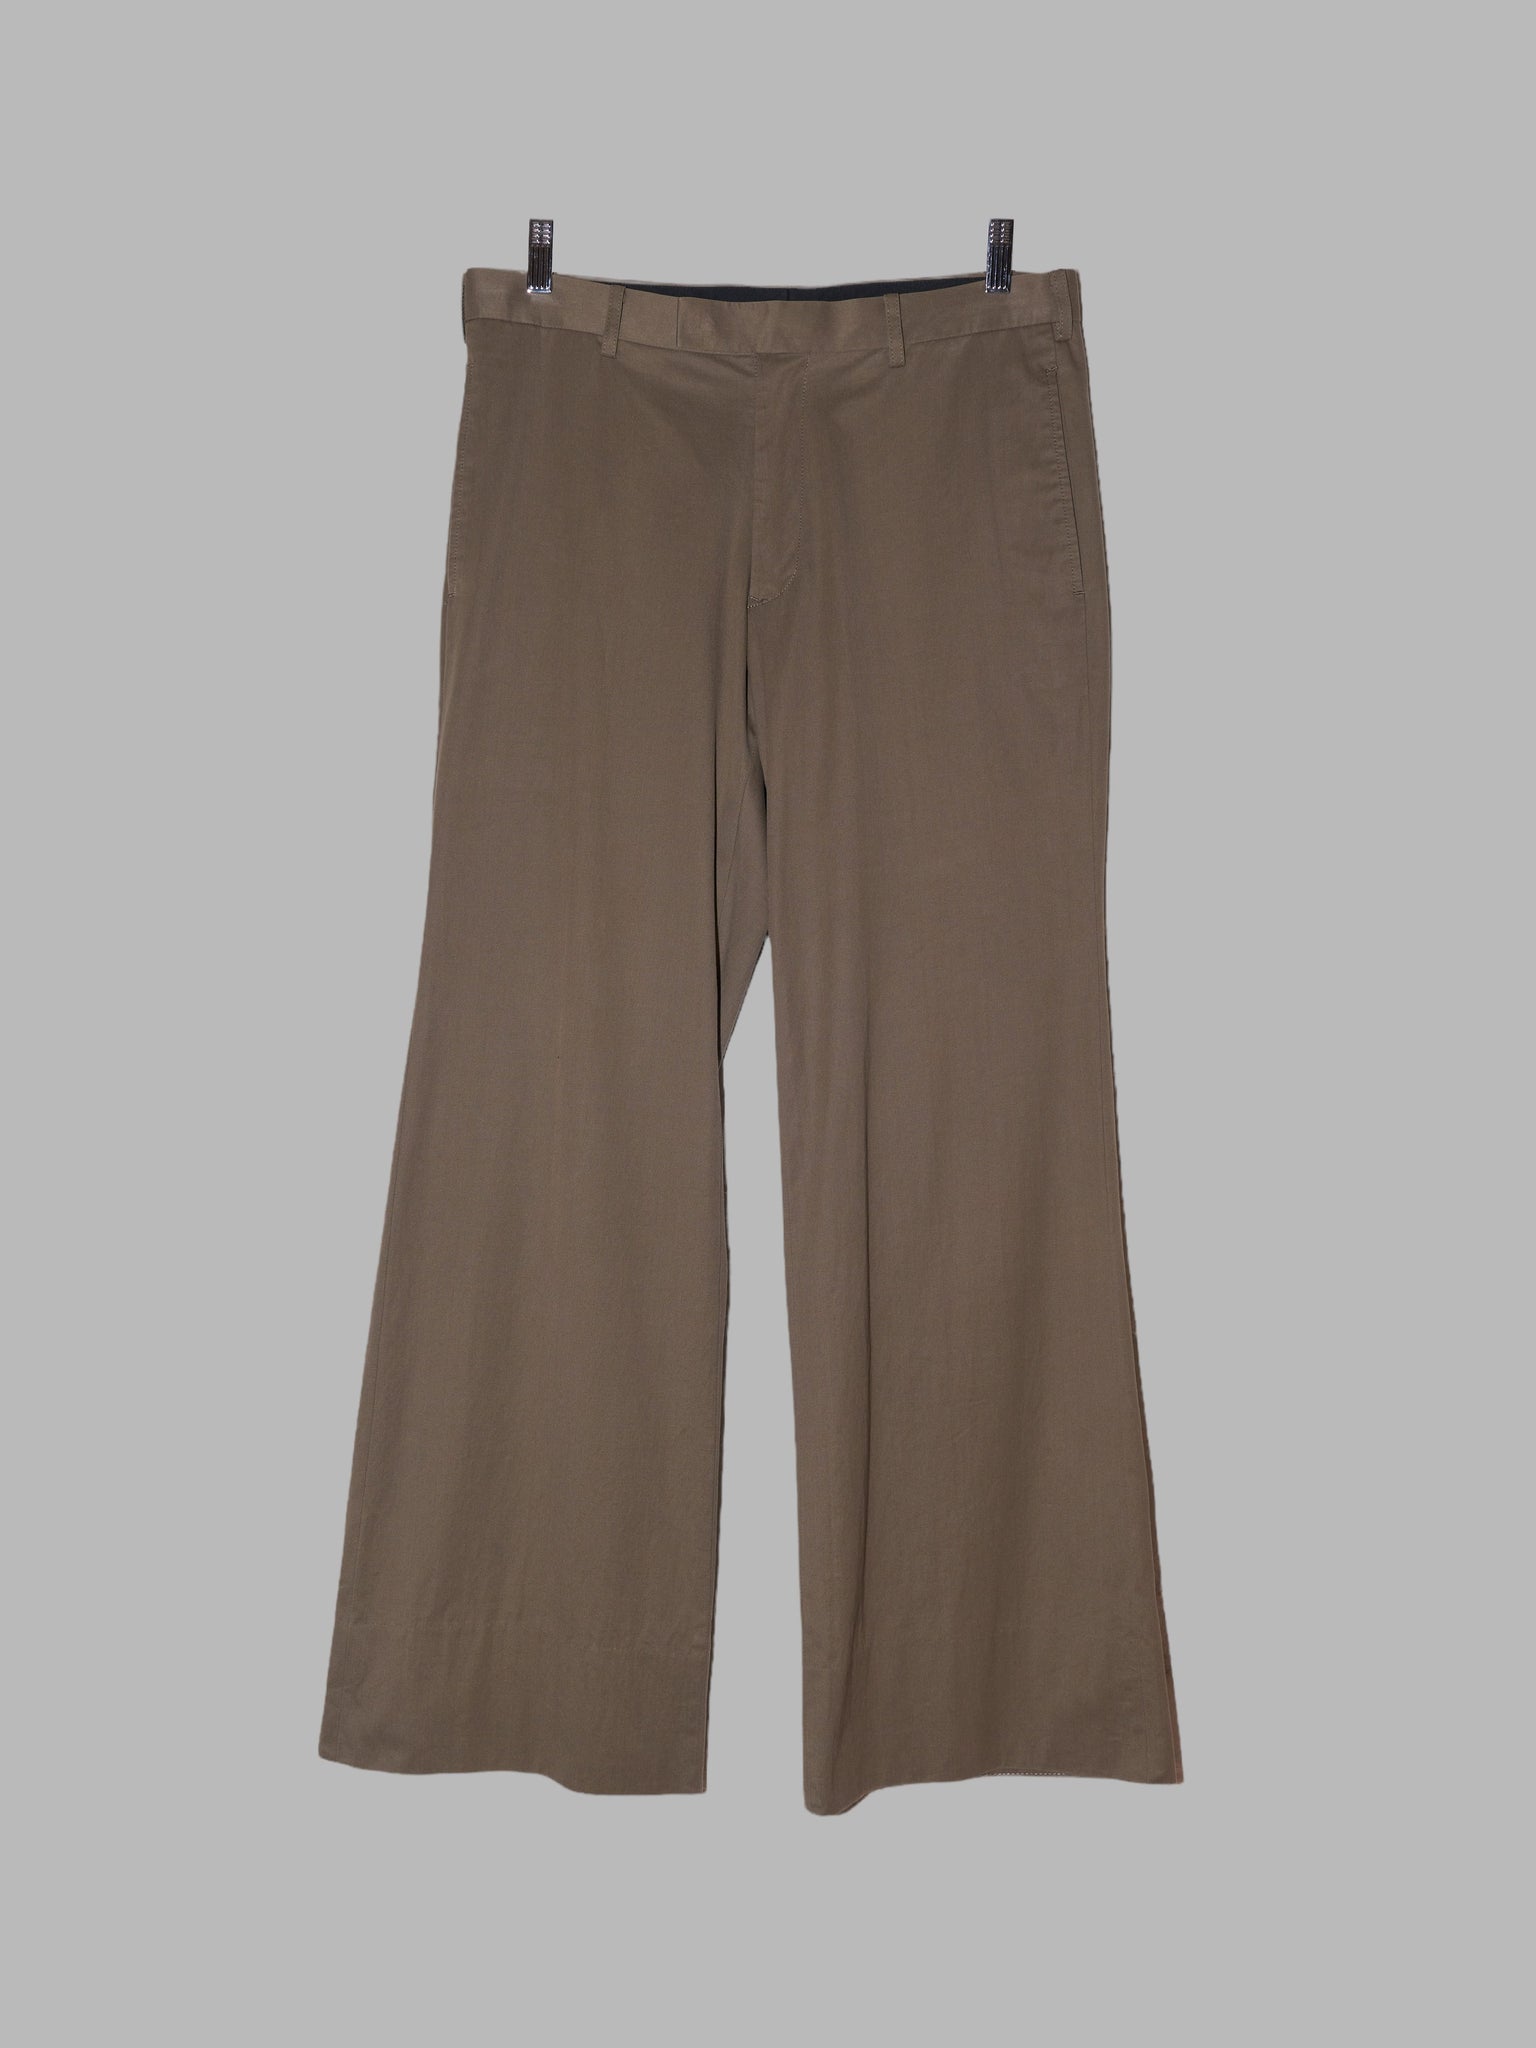 Y’s for Men Yohji Yamamoto khaki cotton straight leg trousers - size 3 M L